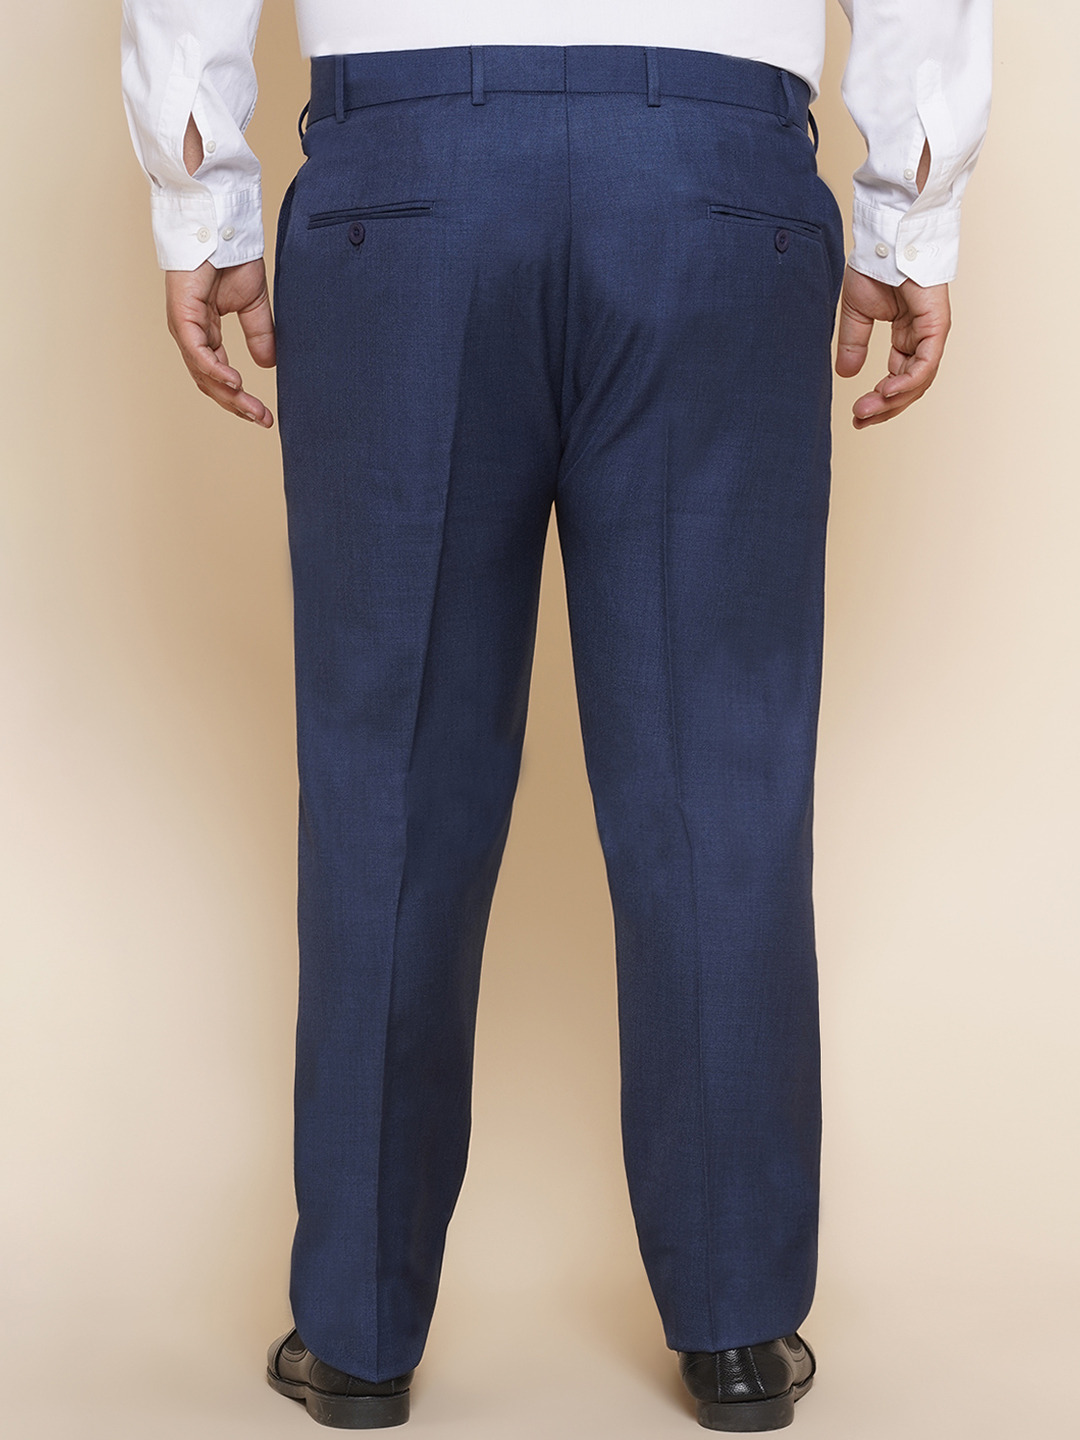 bottomwear/trousers/JPTR22010H/jptr22010h-5.jpg